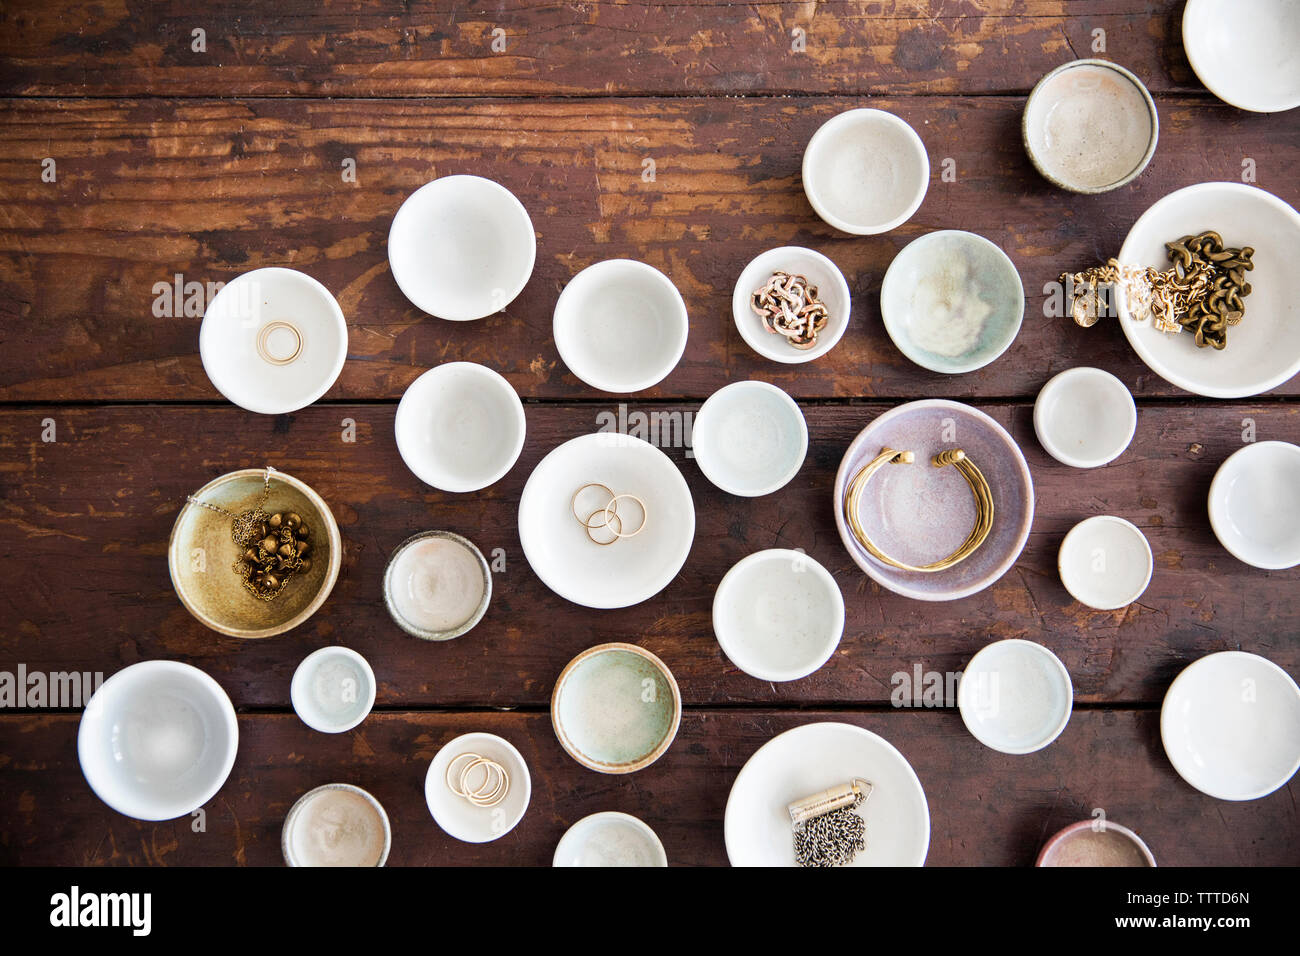 Vue aérienne de bijoux dans des bols et assiettes disposées sur la table Banque D'Images